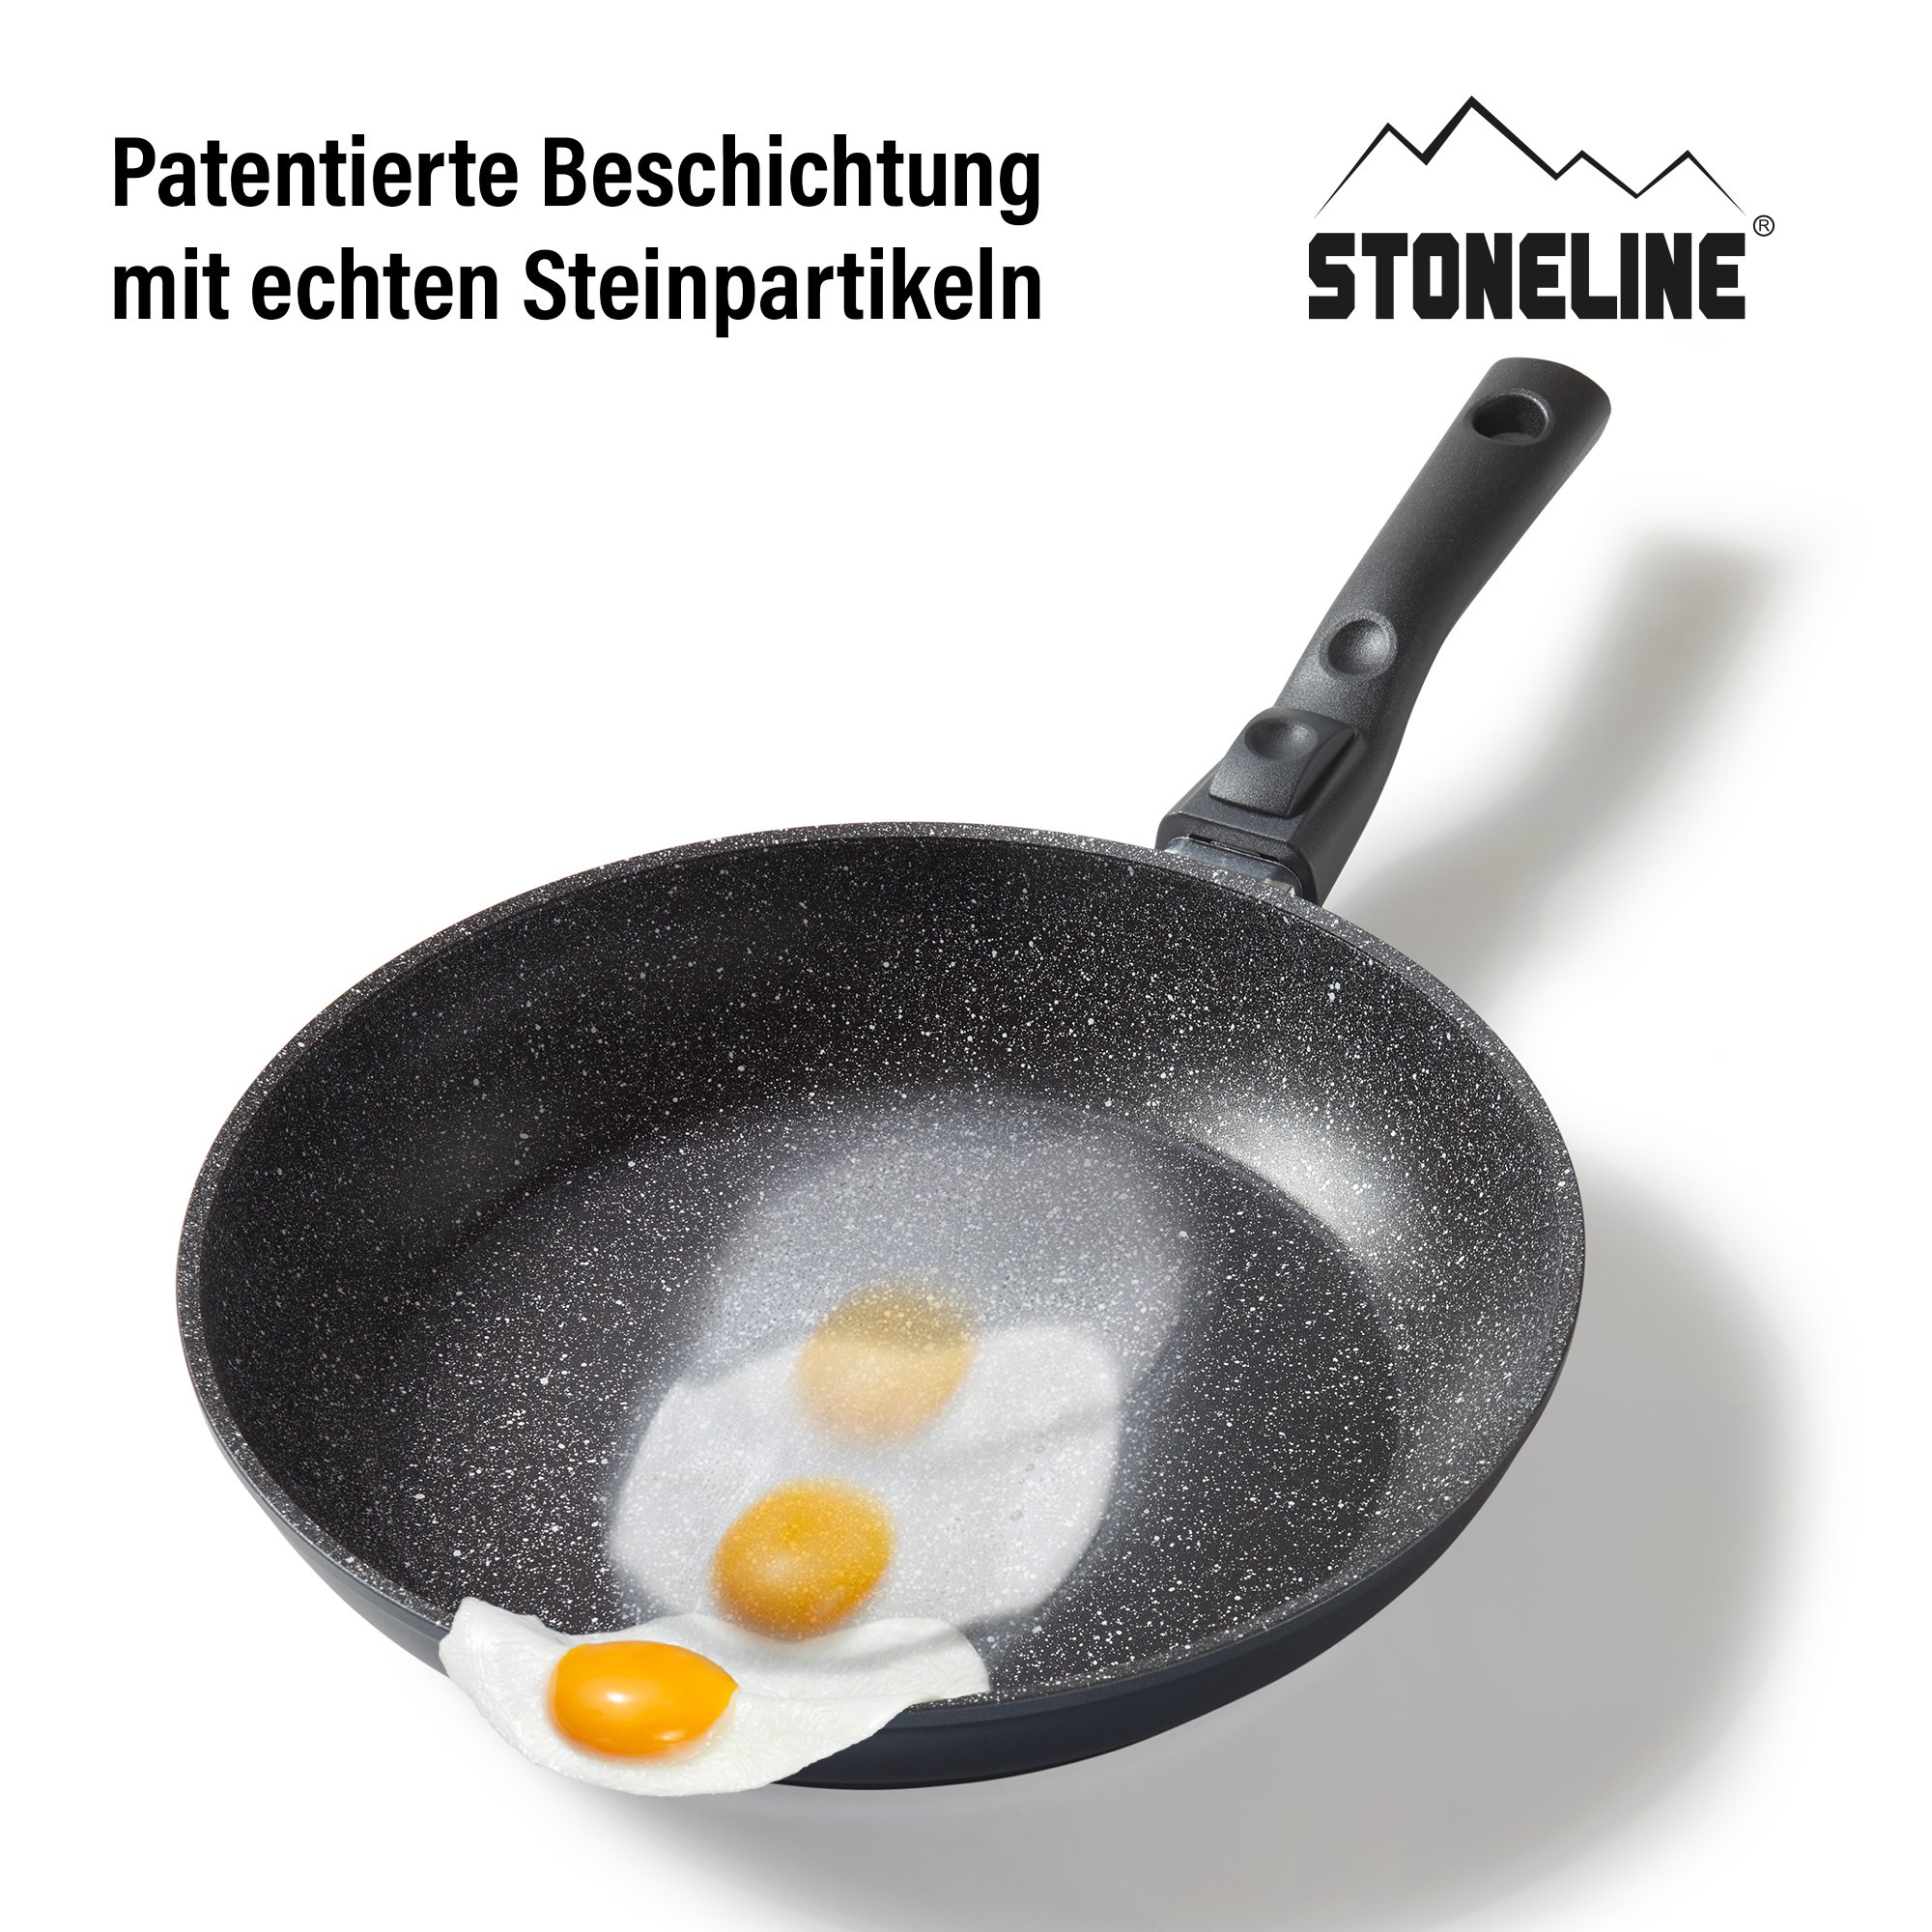 STONELINE® Sauteuse 24 cm, Poignée amovible, Antiadhésive, Made in Germany | FLEX